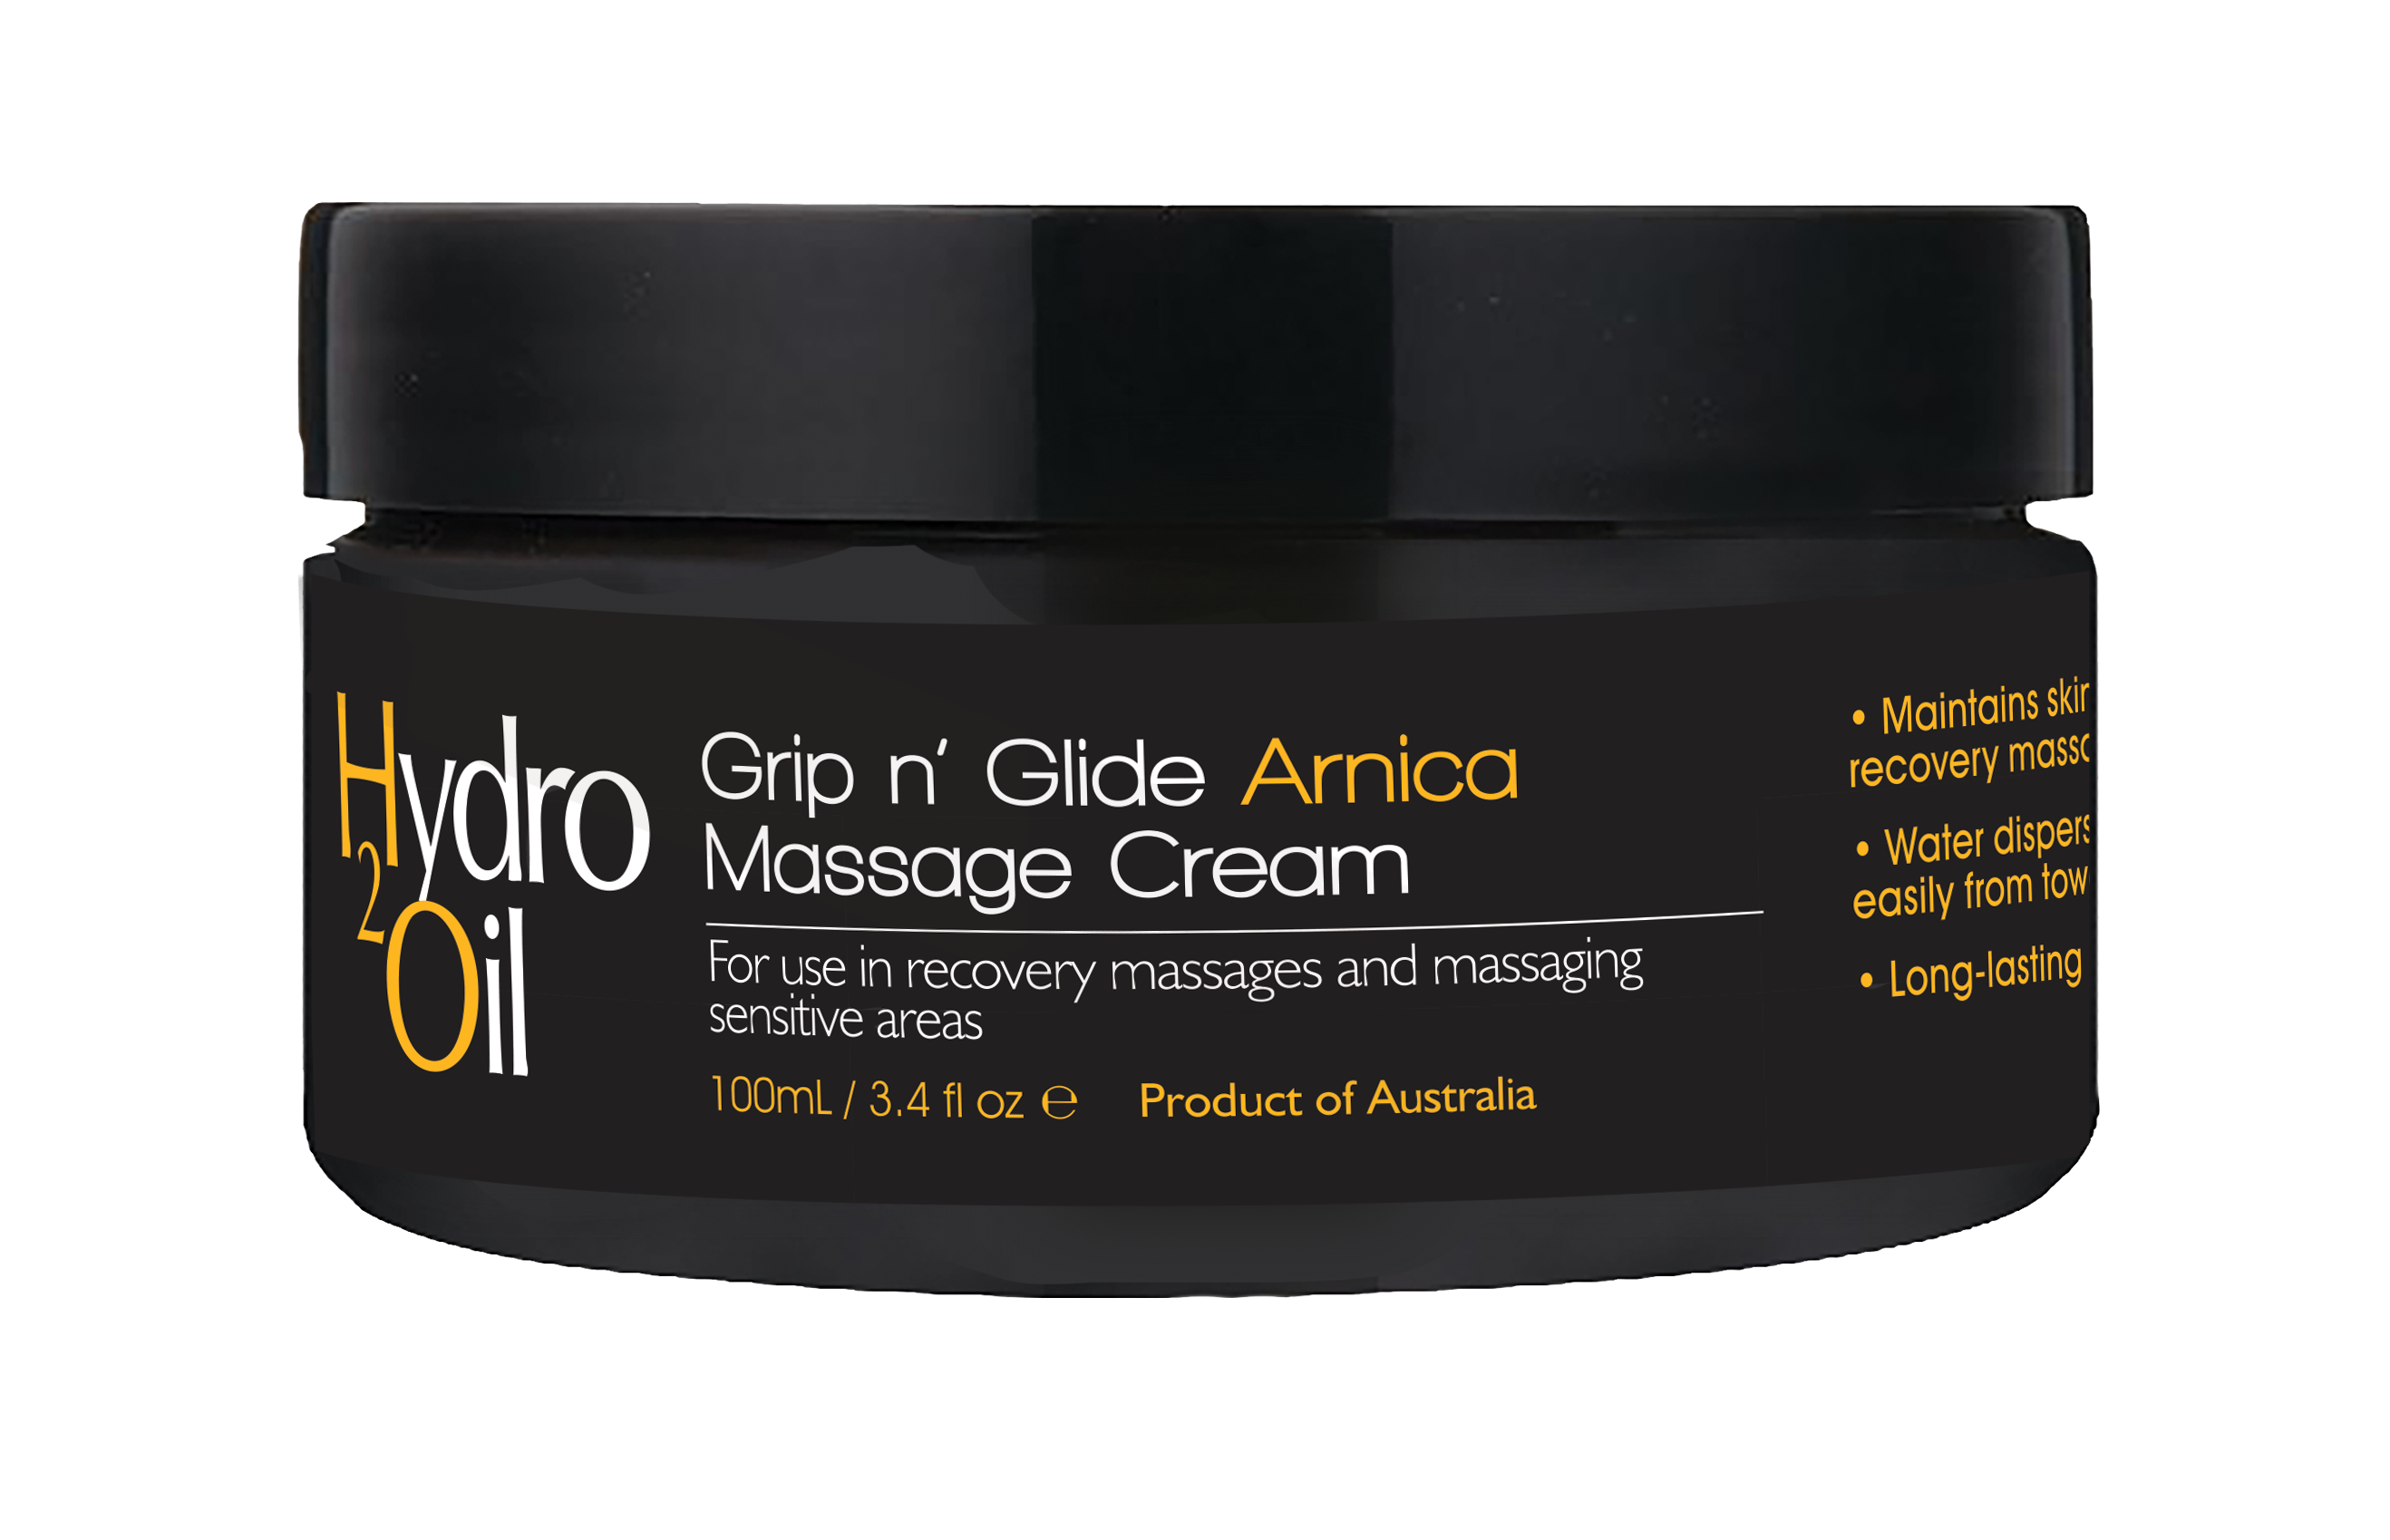 Hydro 2 Oil Massage Cream Arnica 100ml